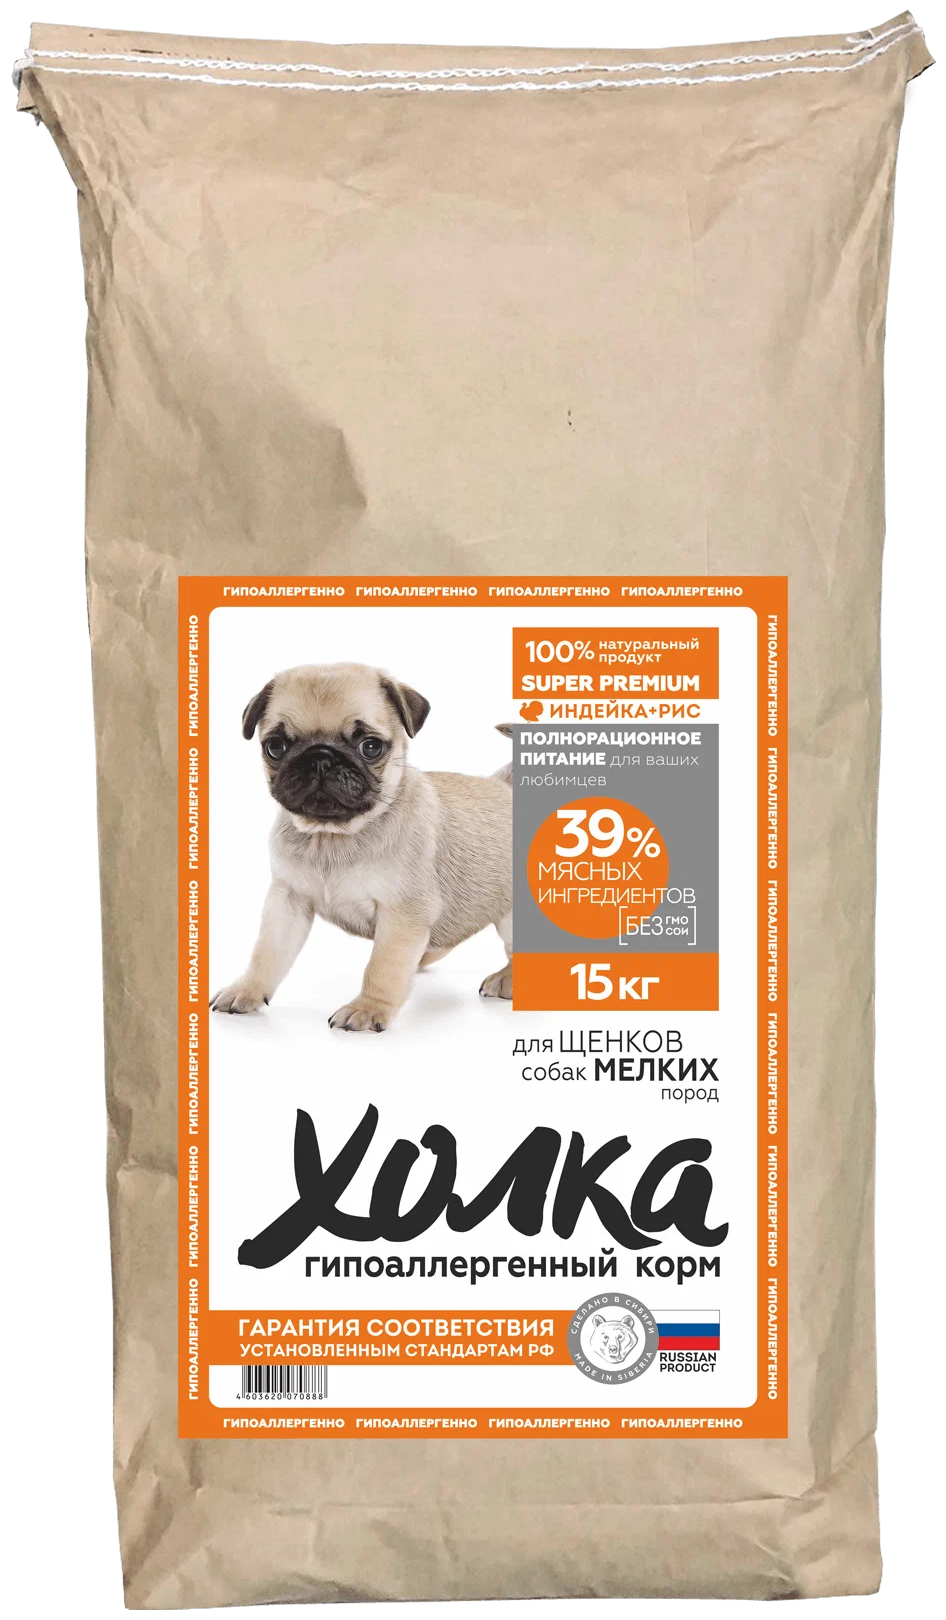 Гипоаллергенный полнорационный корм "Холка" для щенков собак мелких пород (39% мяса) из индейки и риса 15 кг